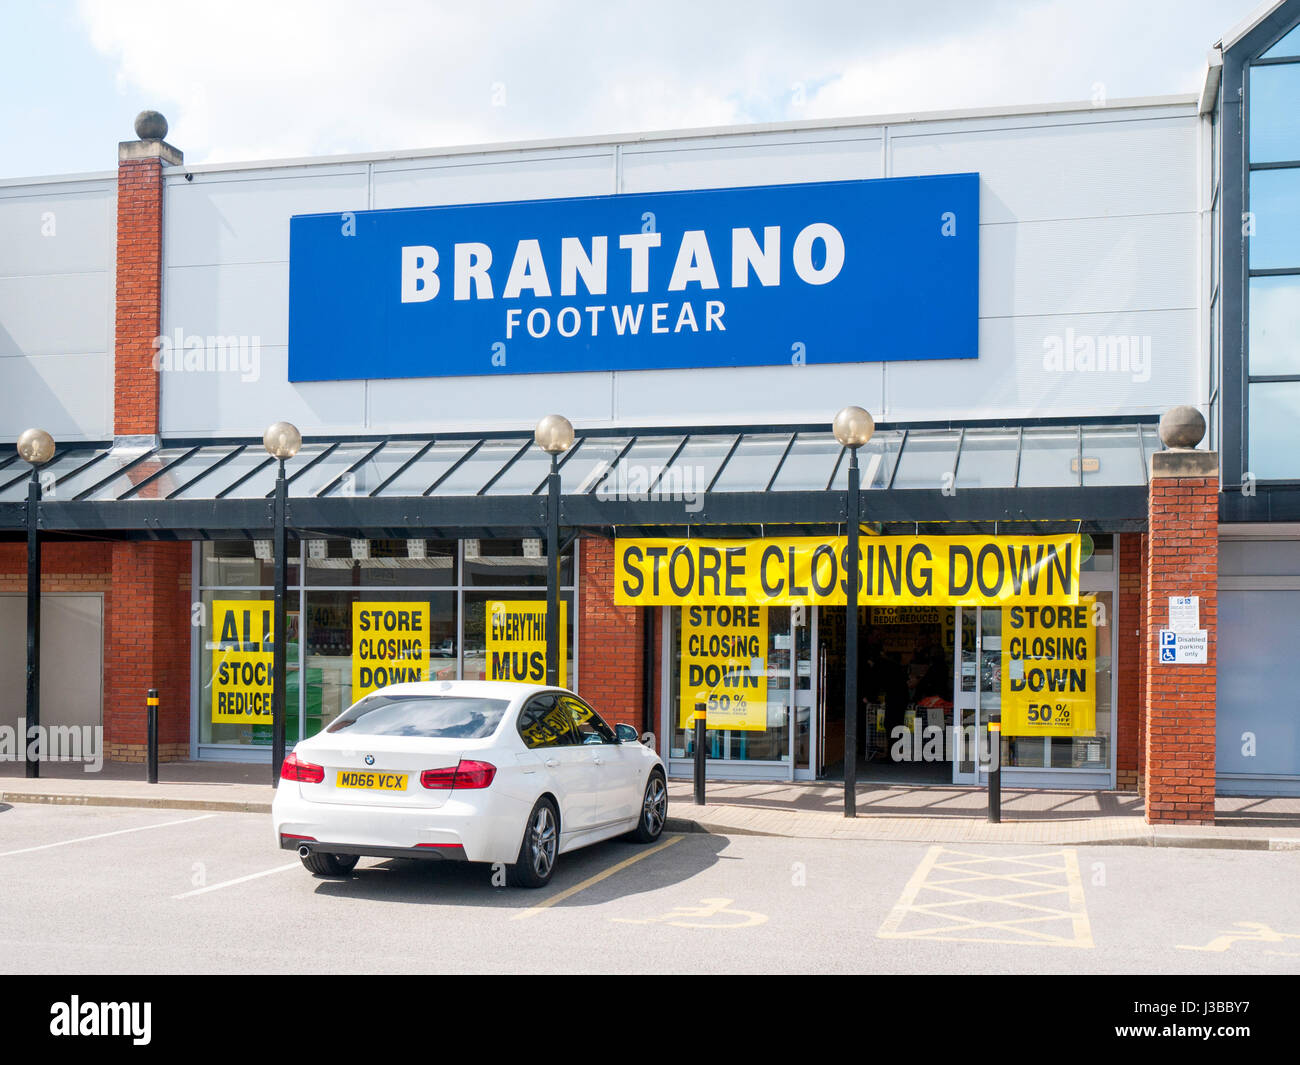 Brantano footwear store closing down in Crewe Cheshire UK Stock Photo